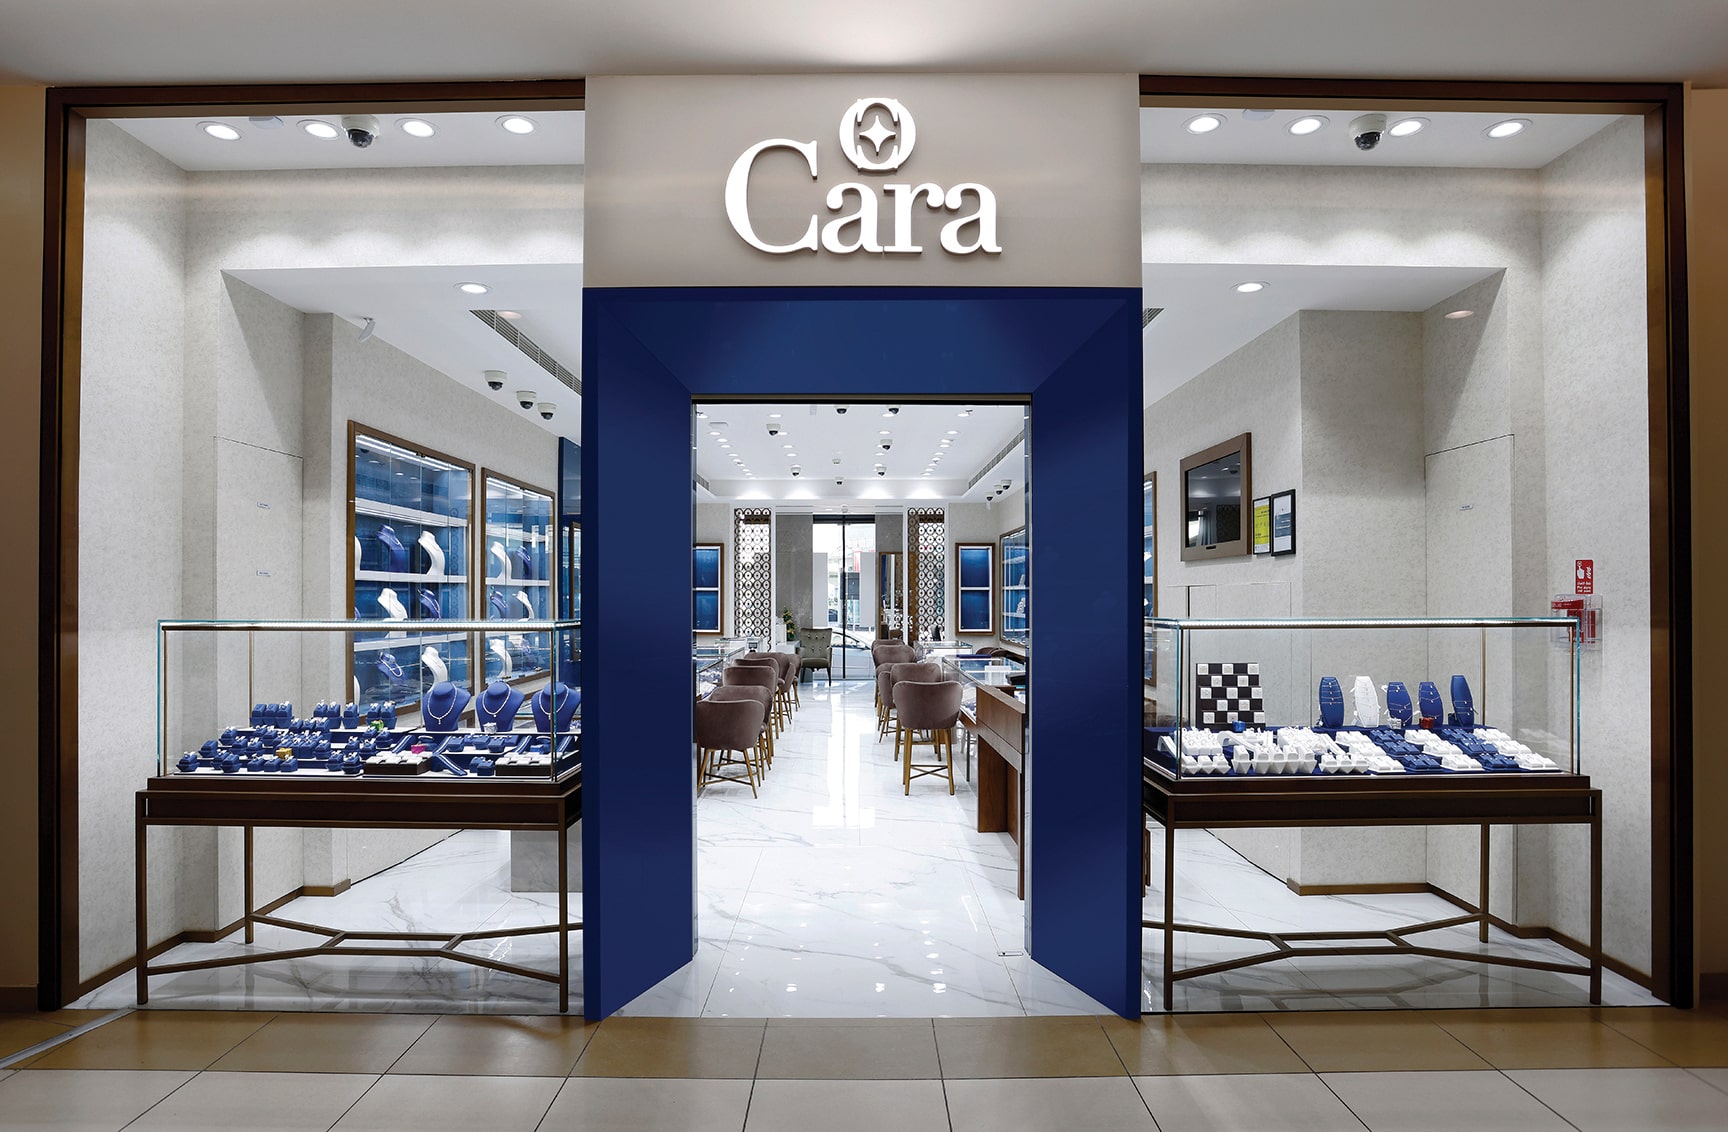 Cara_New Store_Facade copy-min